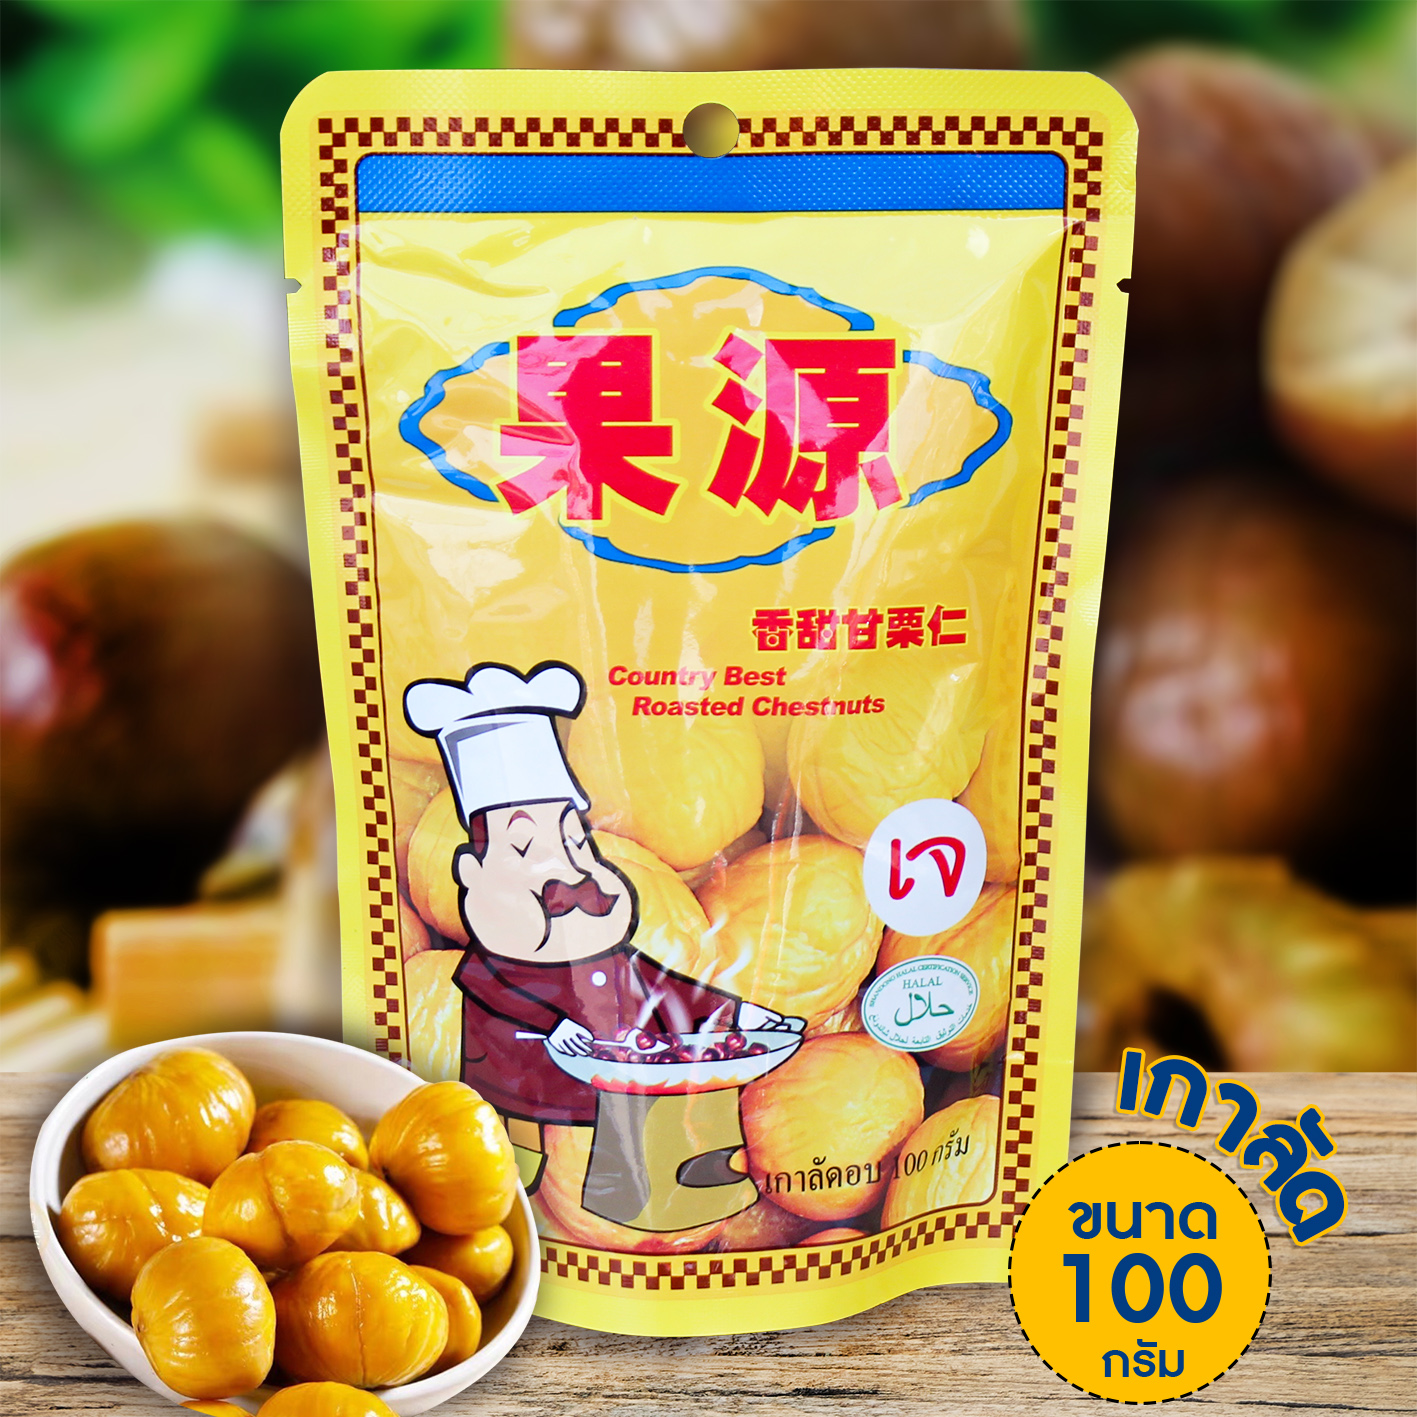 (1 ห่อ) เนื้อเกาลัดอบพร้อมทาน เกาลัดก่อหยวน 80 กรัม และ 100 กรัม บรรจุ 1 แพ็ค Goryuan Roasted Chestnut